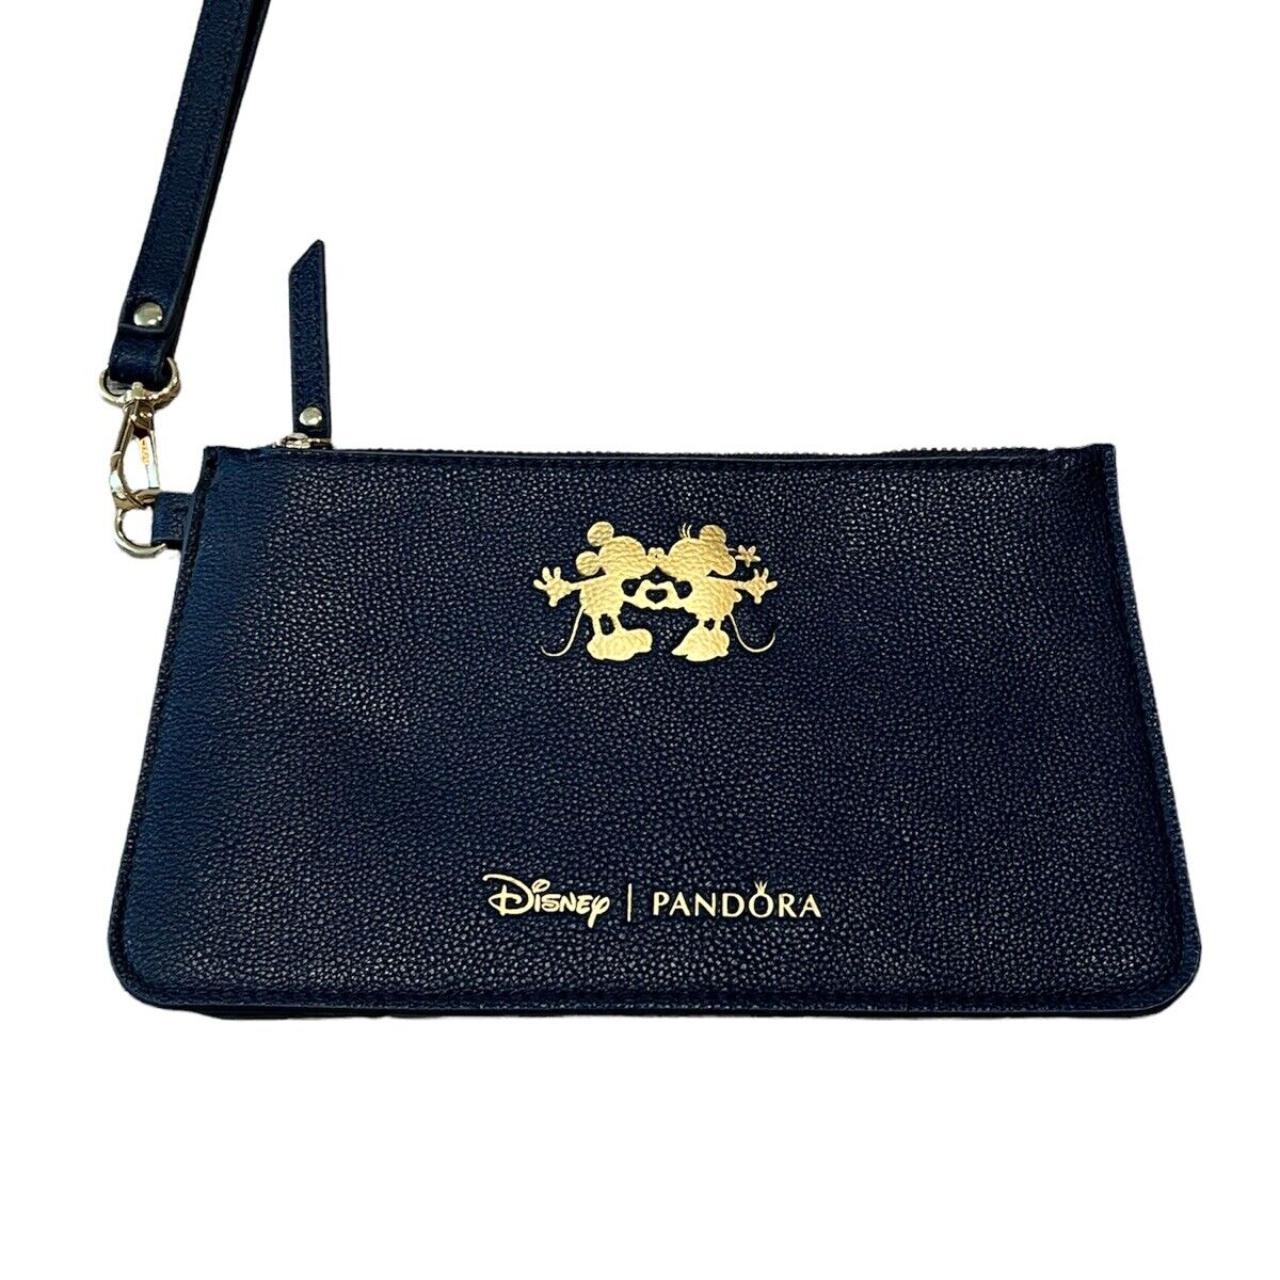 Product Image 1 - Disney Pandora Clutch Bag Zippered